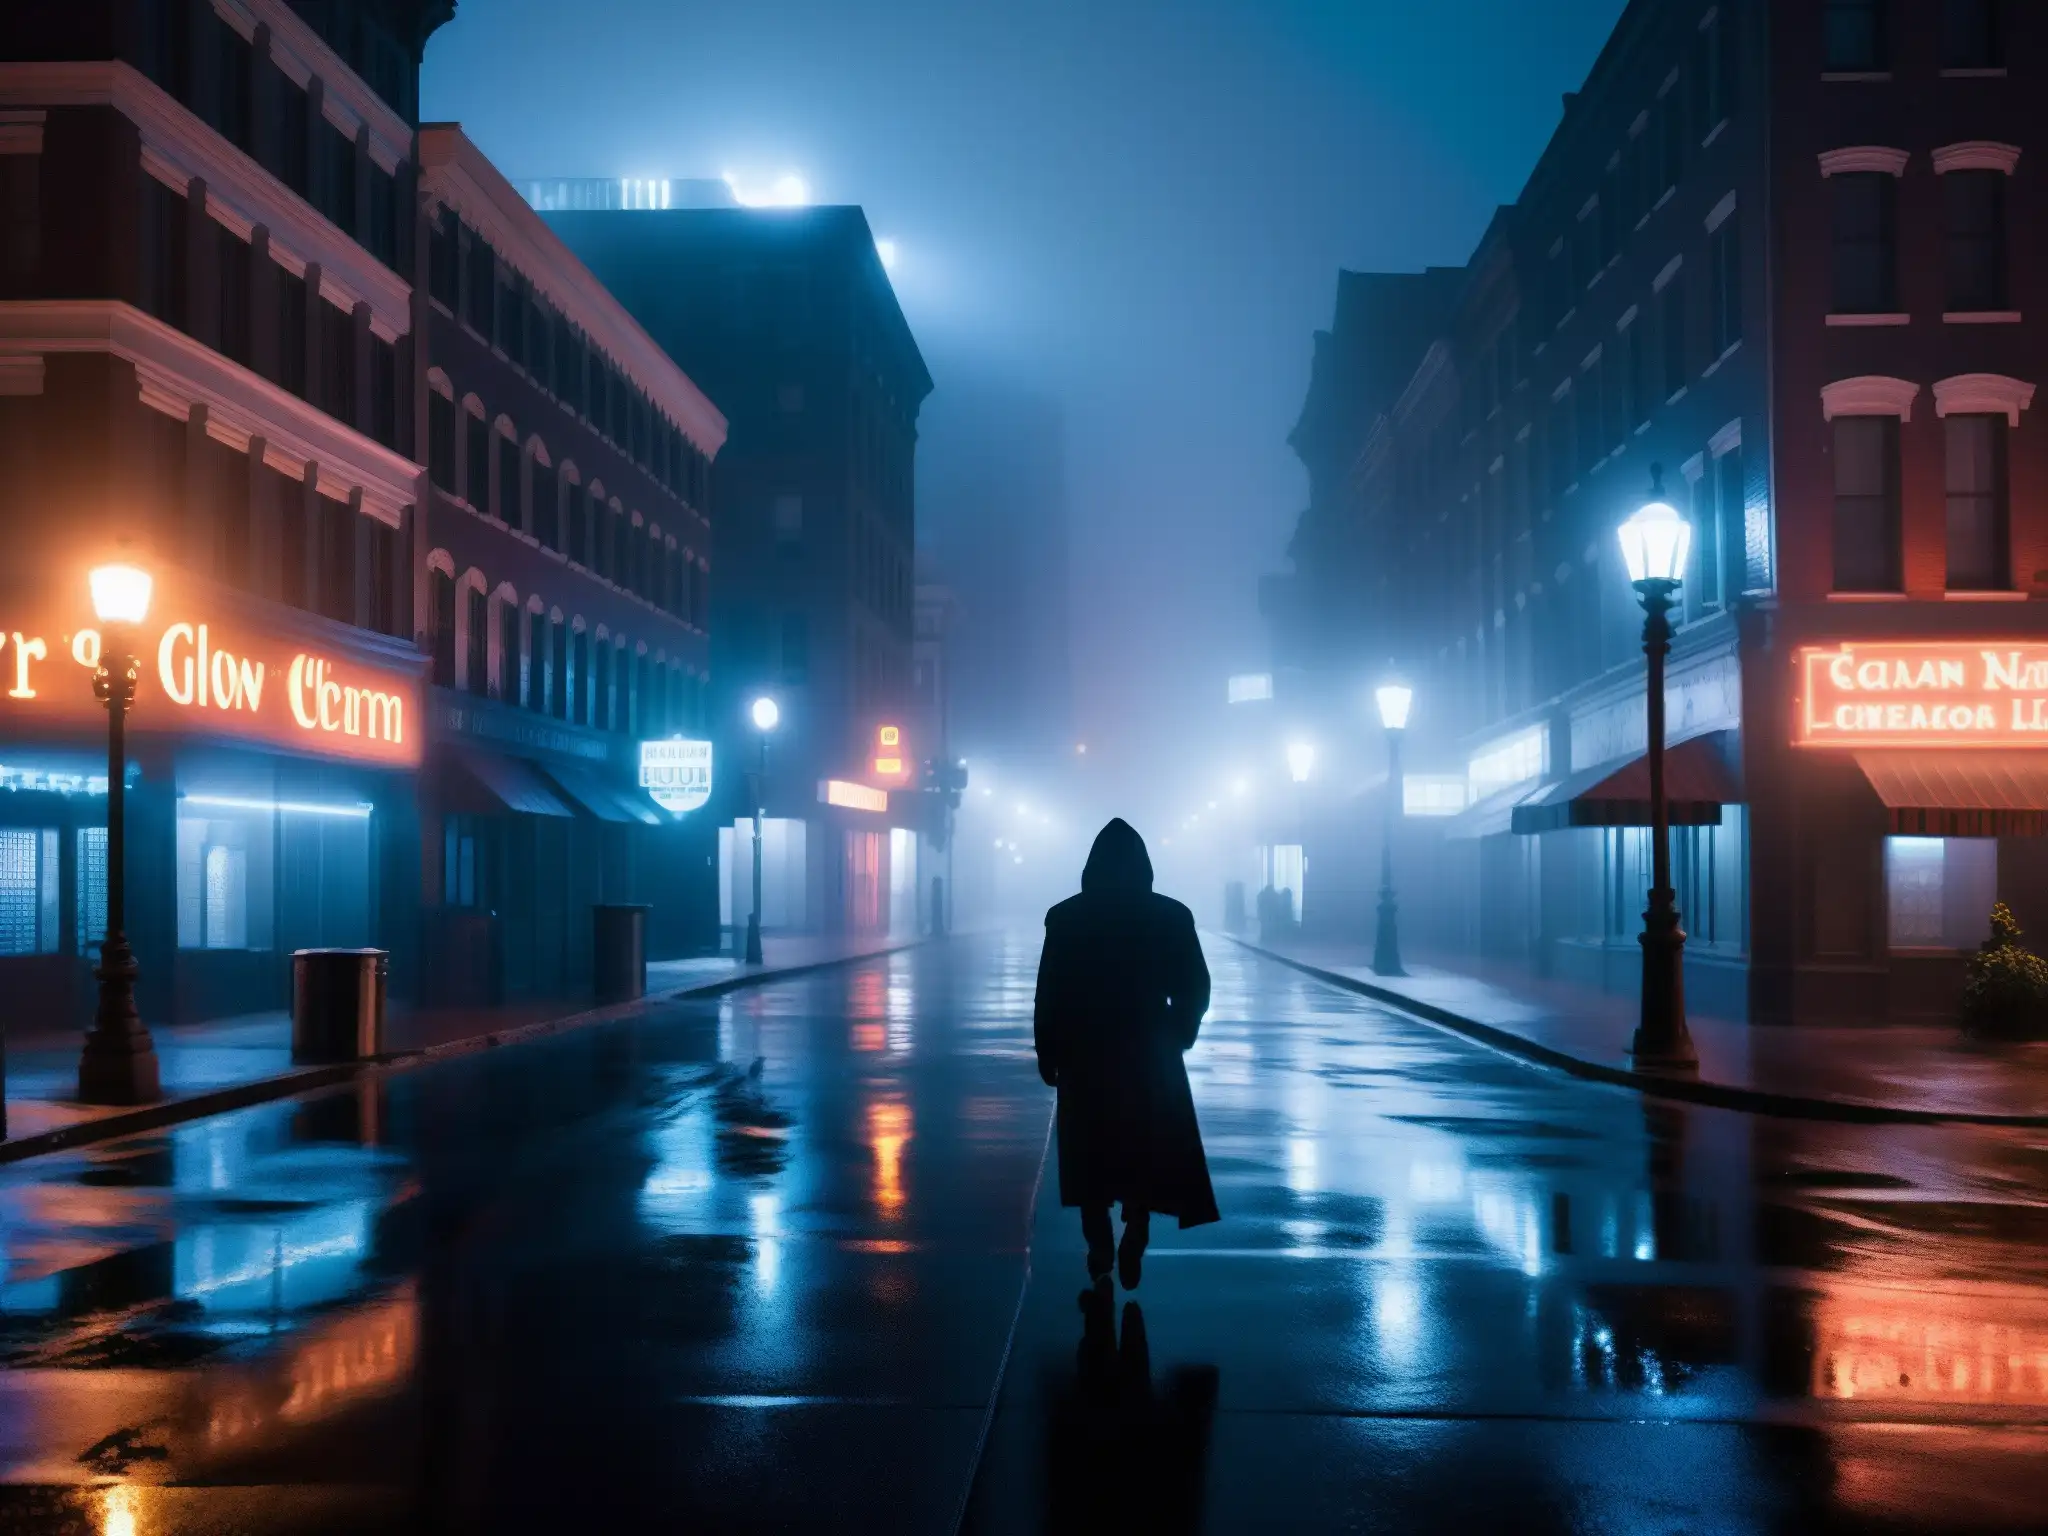 Una calle oscura y neblinosa de la ciudad de noche, con una figura misteriosa entre sombras